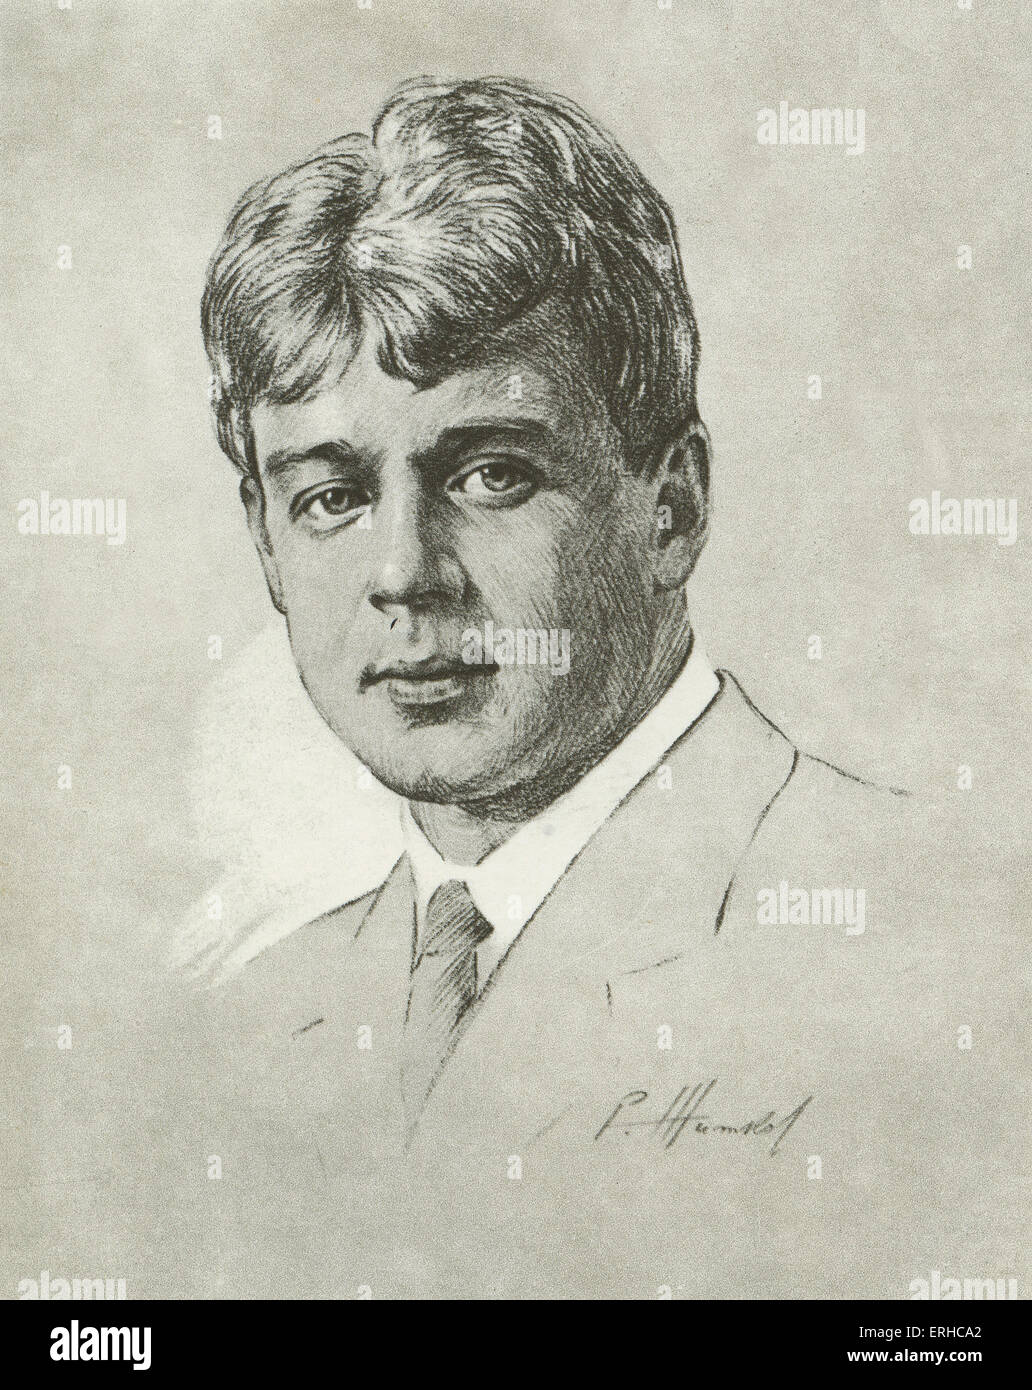 Sergei Yesenin, portrait. Russian poet, 1895-1925. Stock Photo